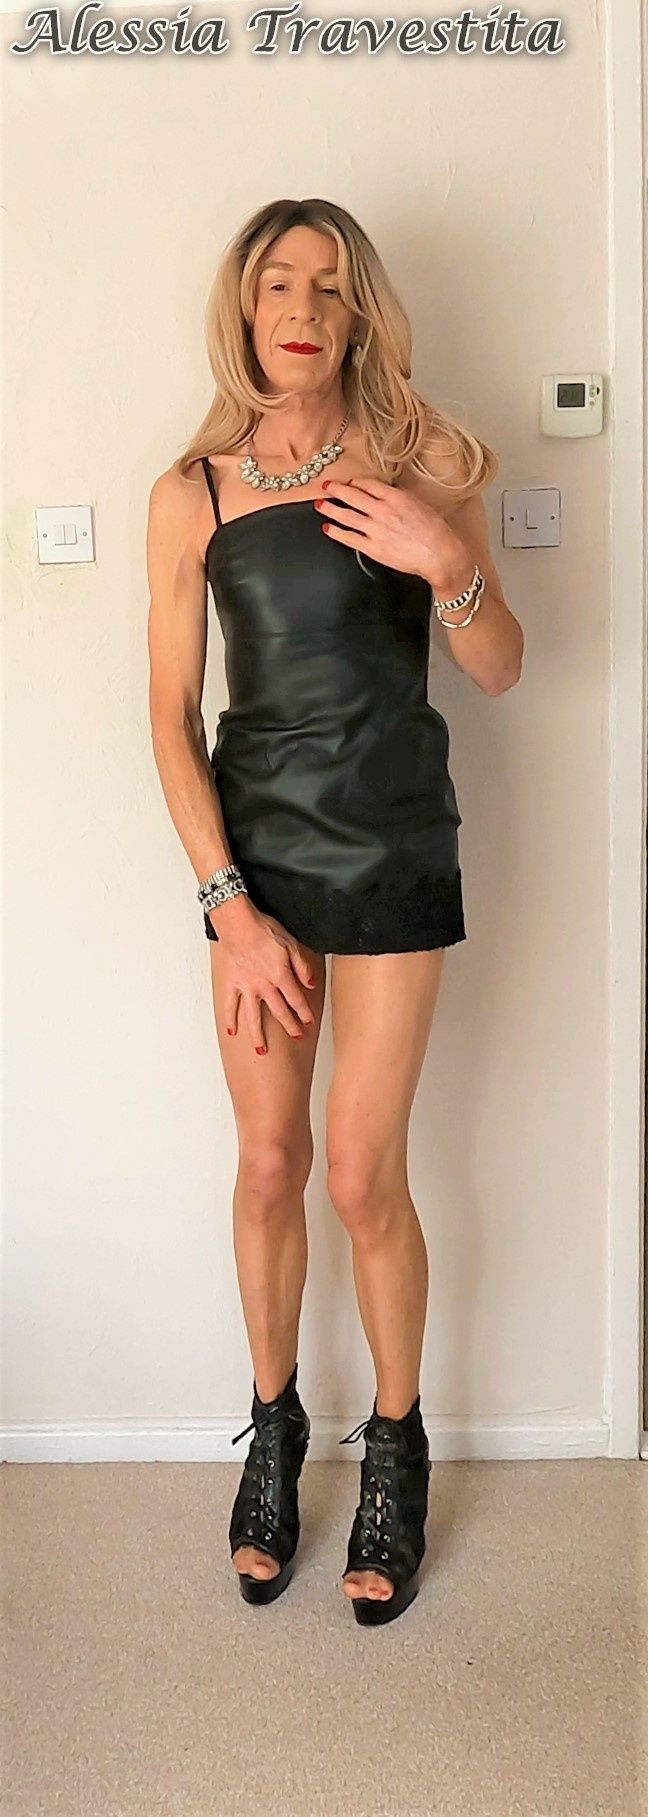 79 Alessia Travestita in Black Leather Dress #21